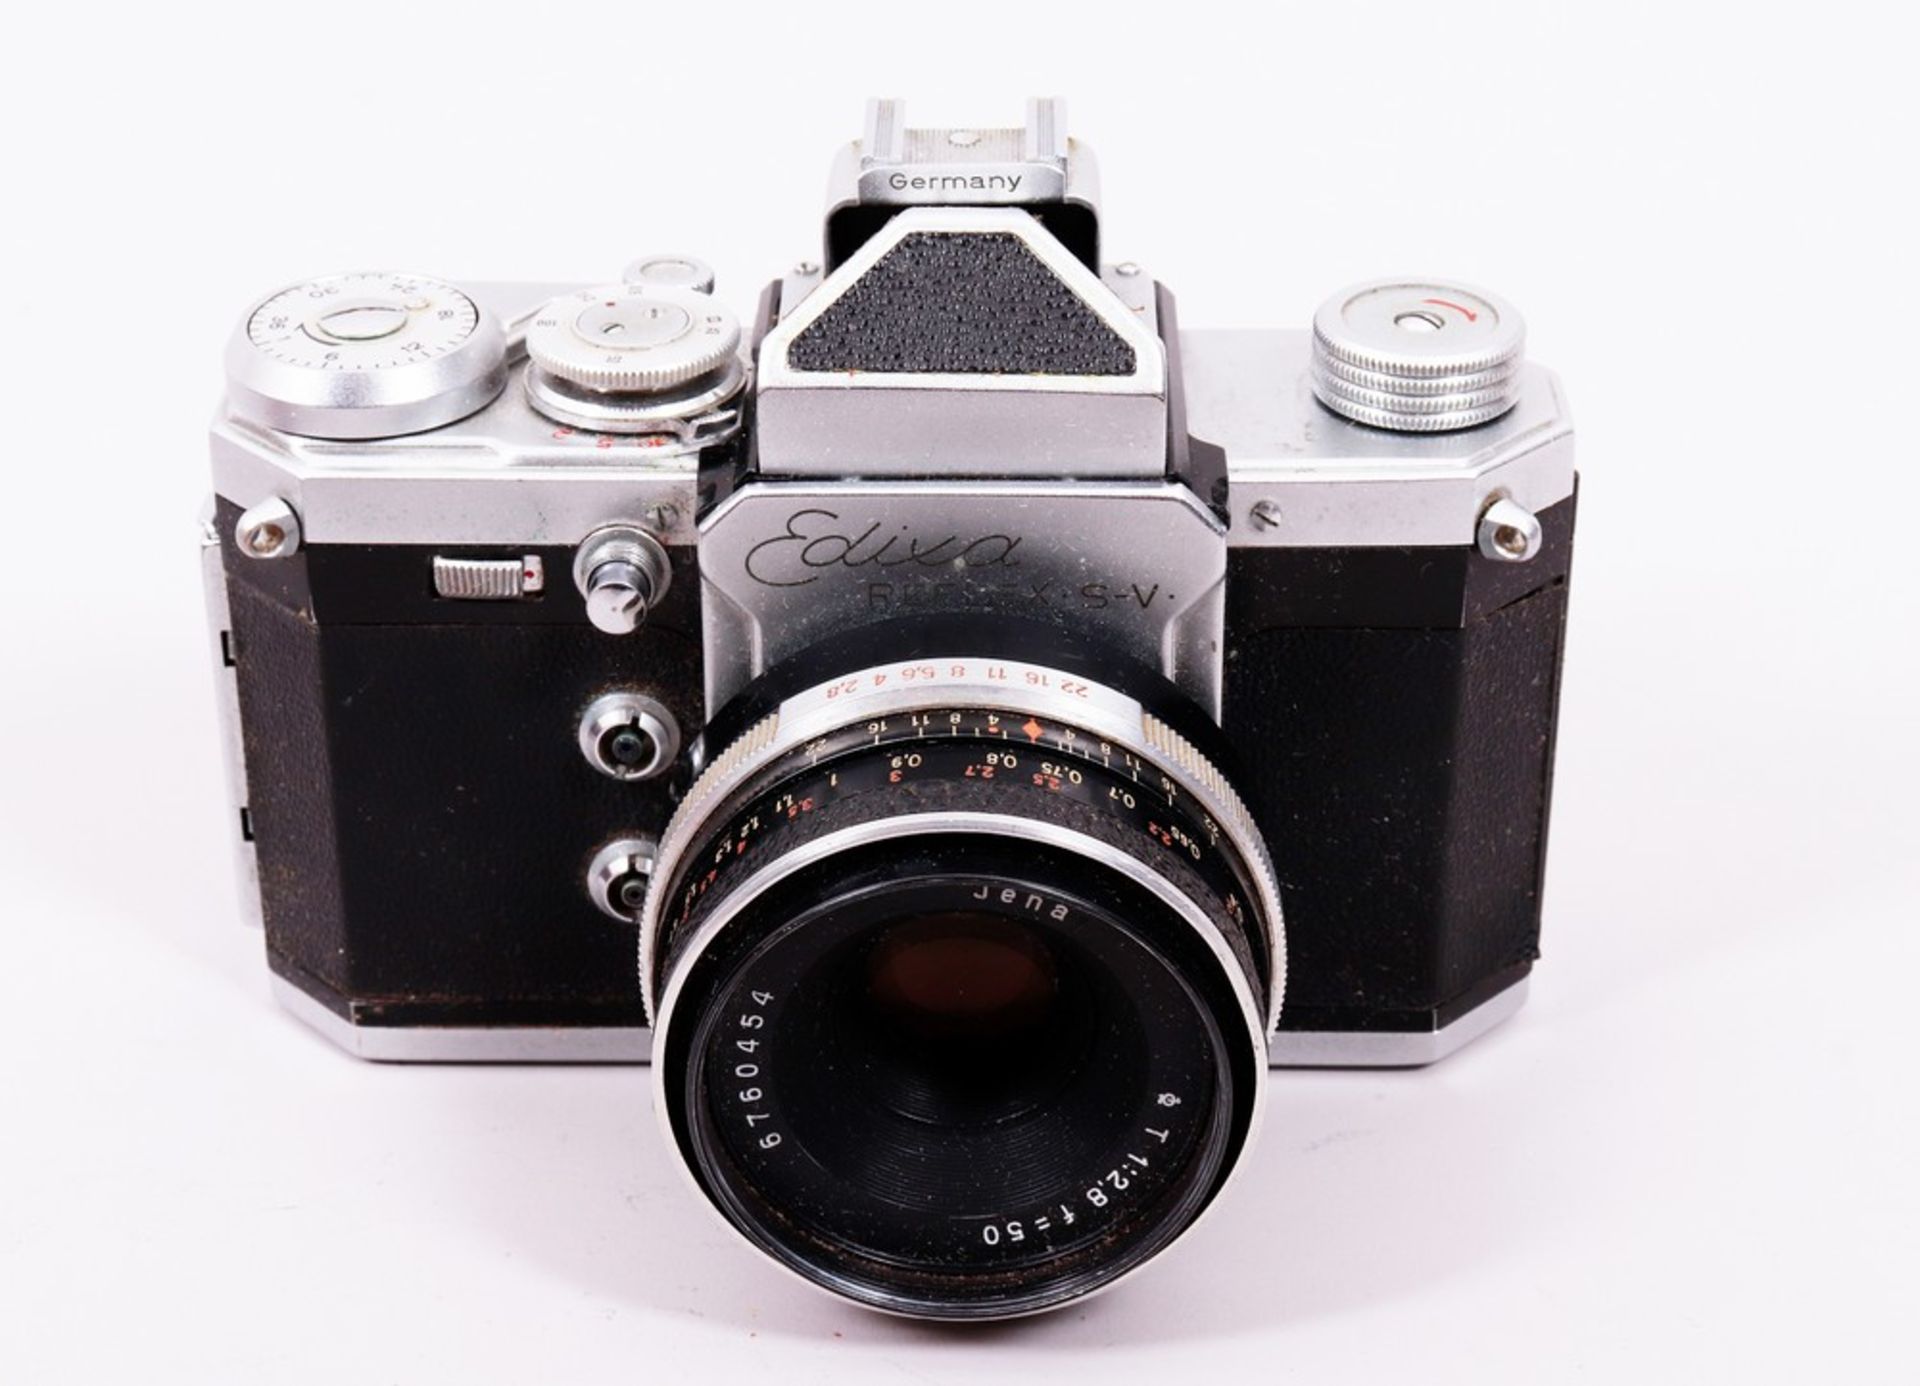 Kamera "Edixa Reflex", Hersteller Wirgin, um 1960 - Bild 3 aus 7